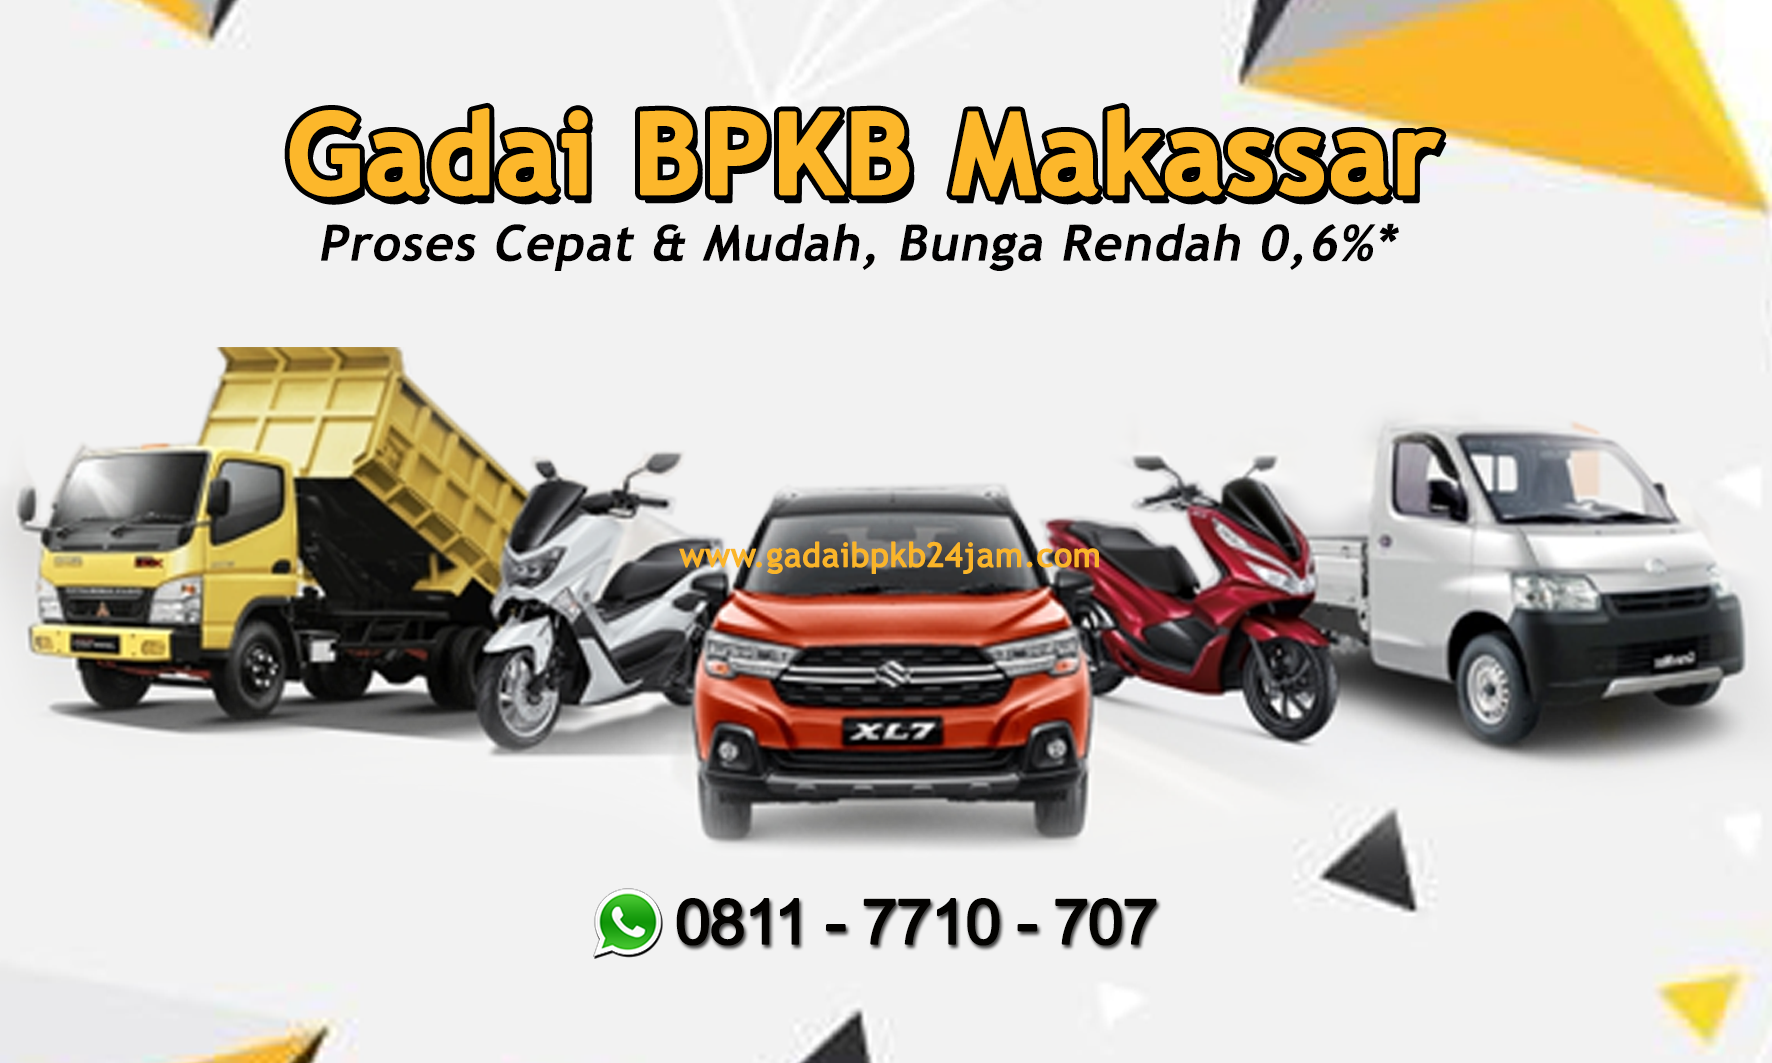 Kredit Gadai BPKB Mobil Bunga Rendah di Makassar